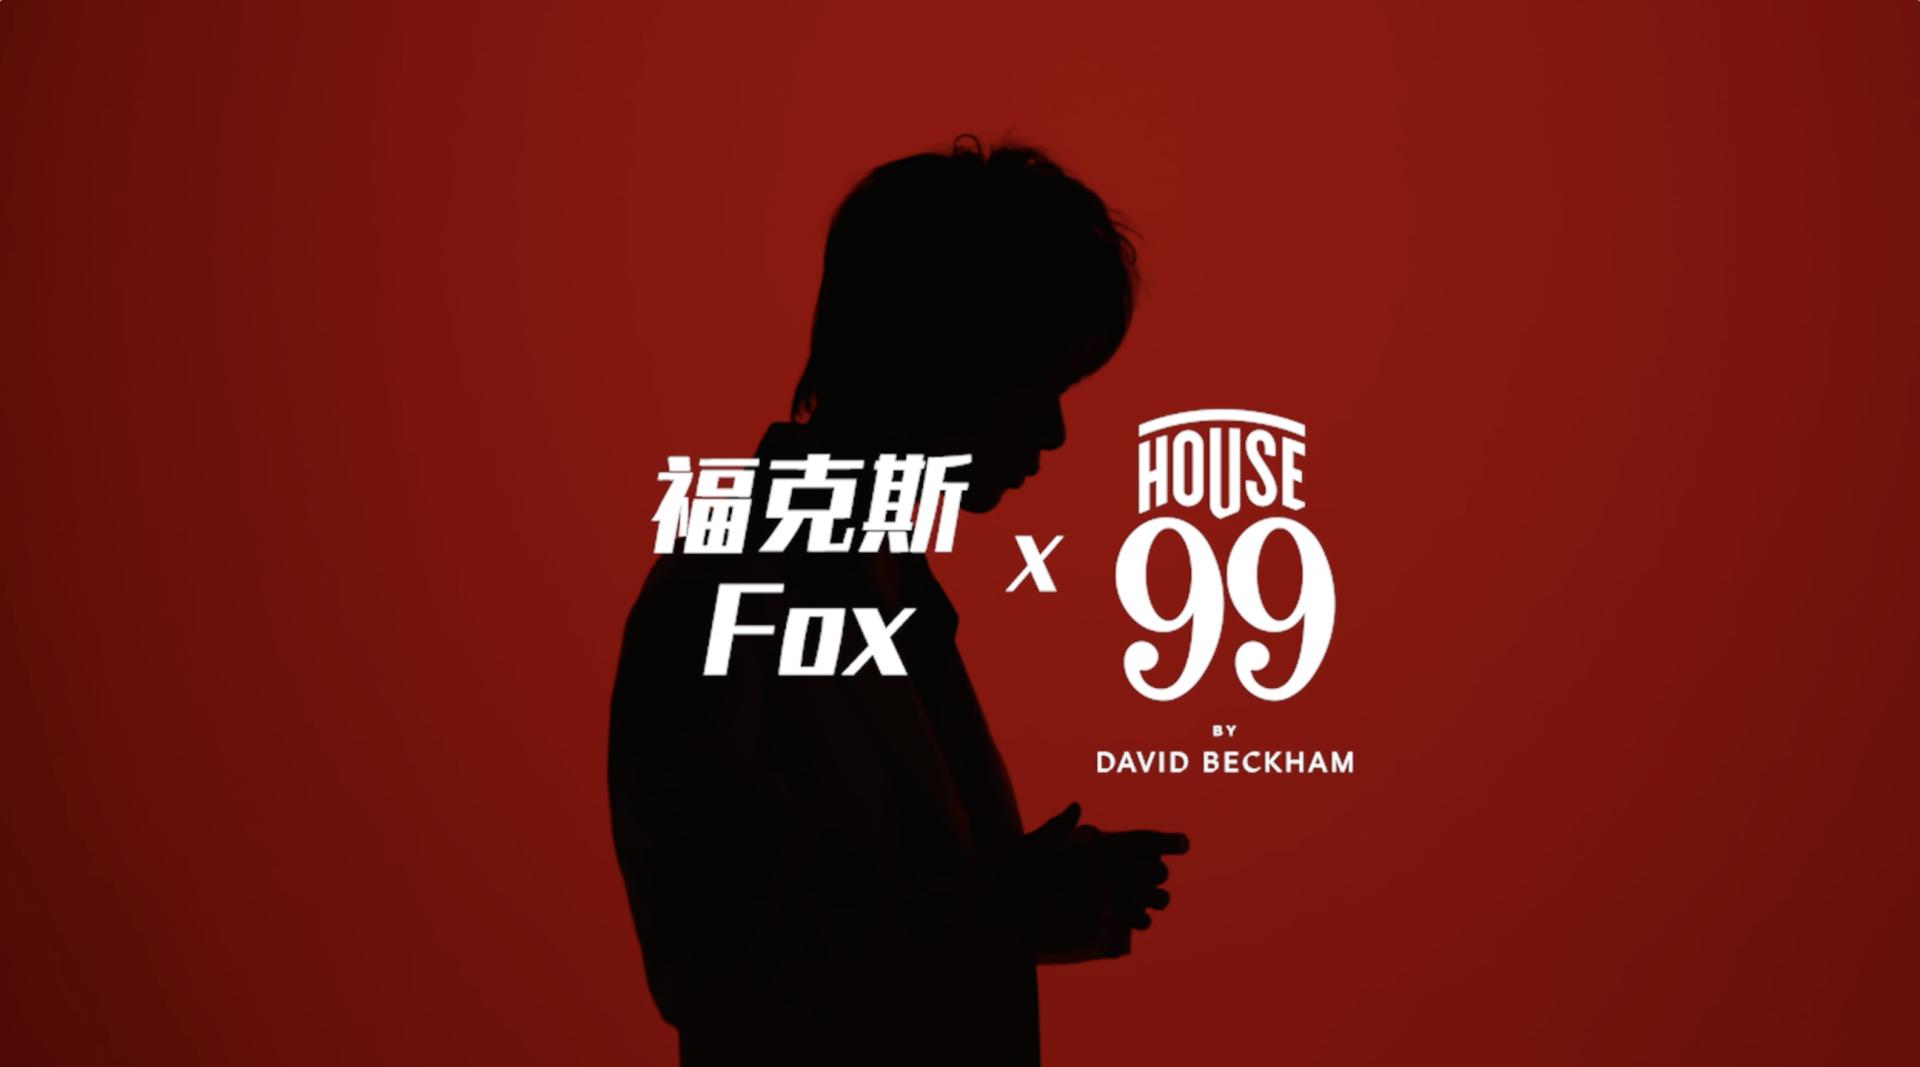 福克斯 x House99 型无所忌，敢立潮头- 导演版